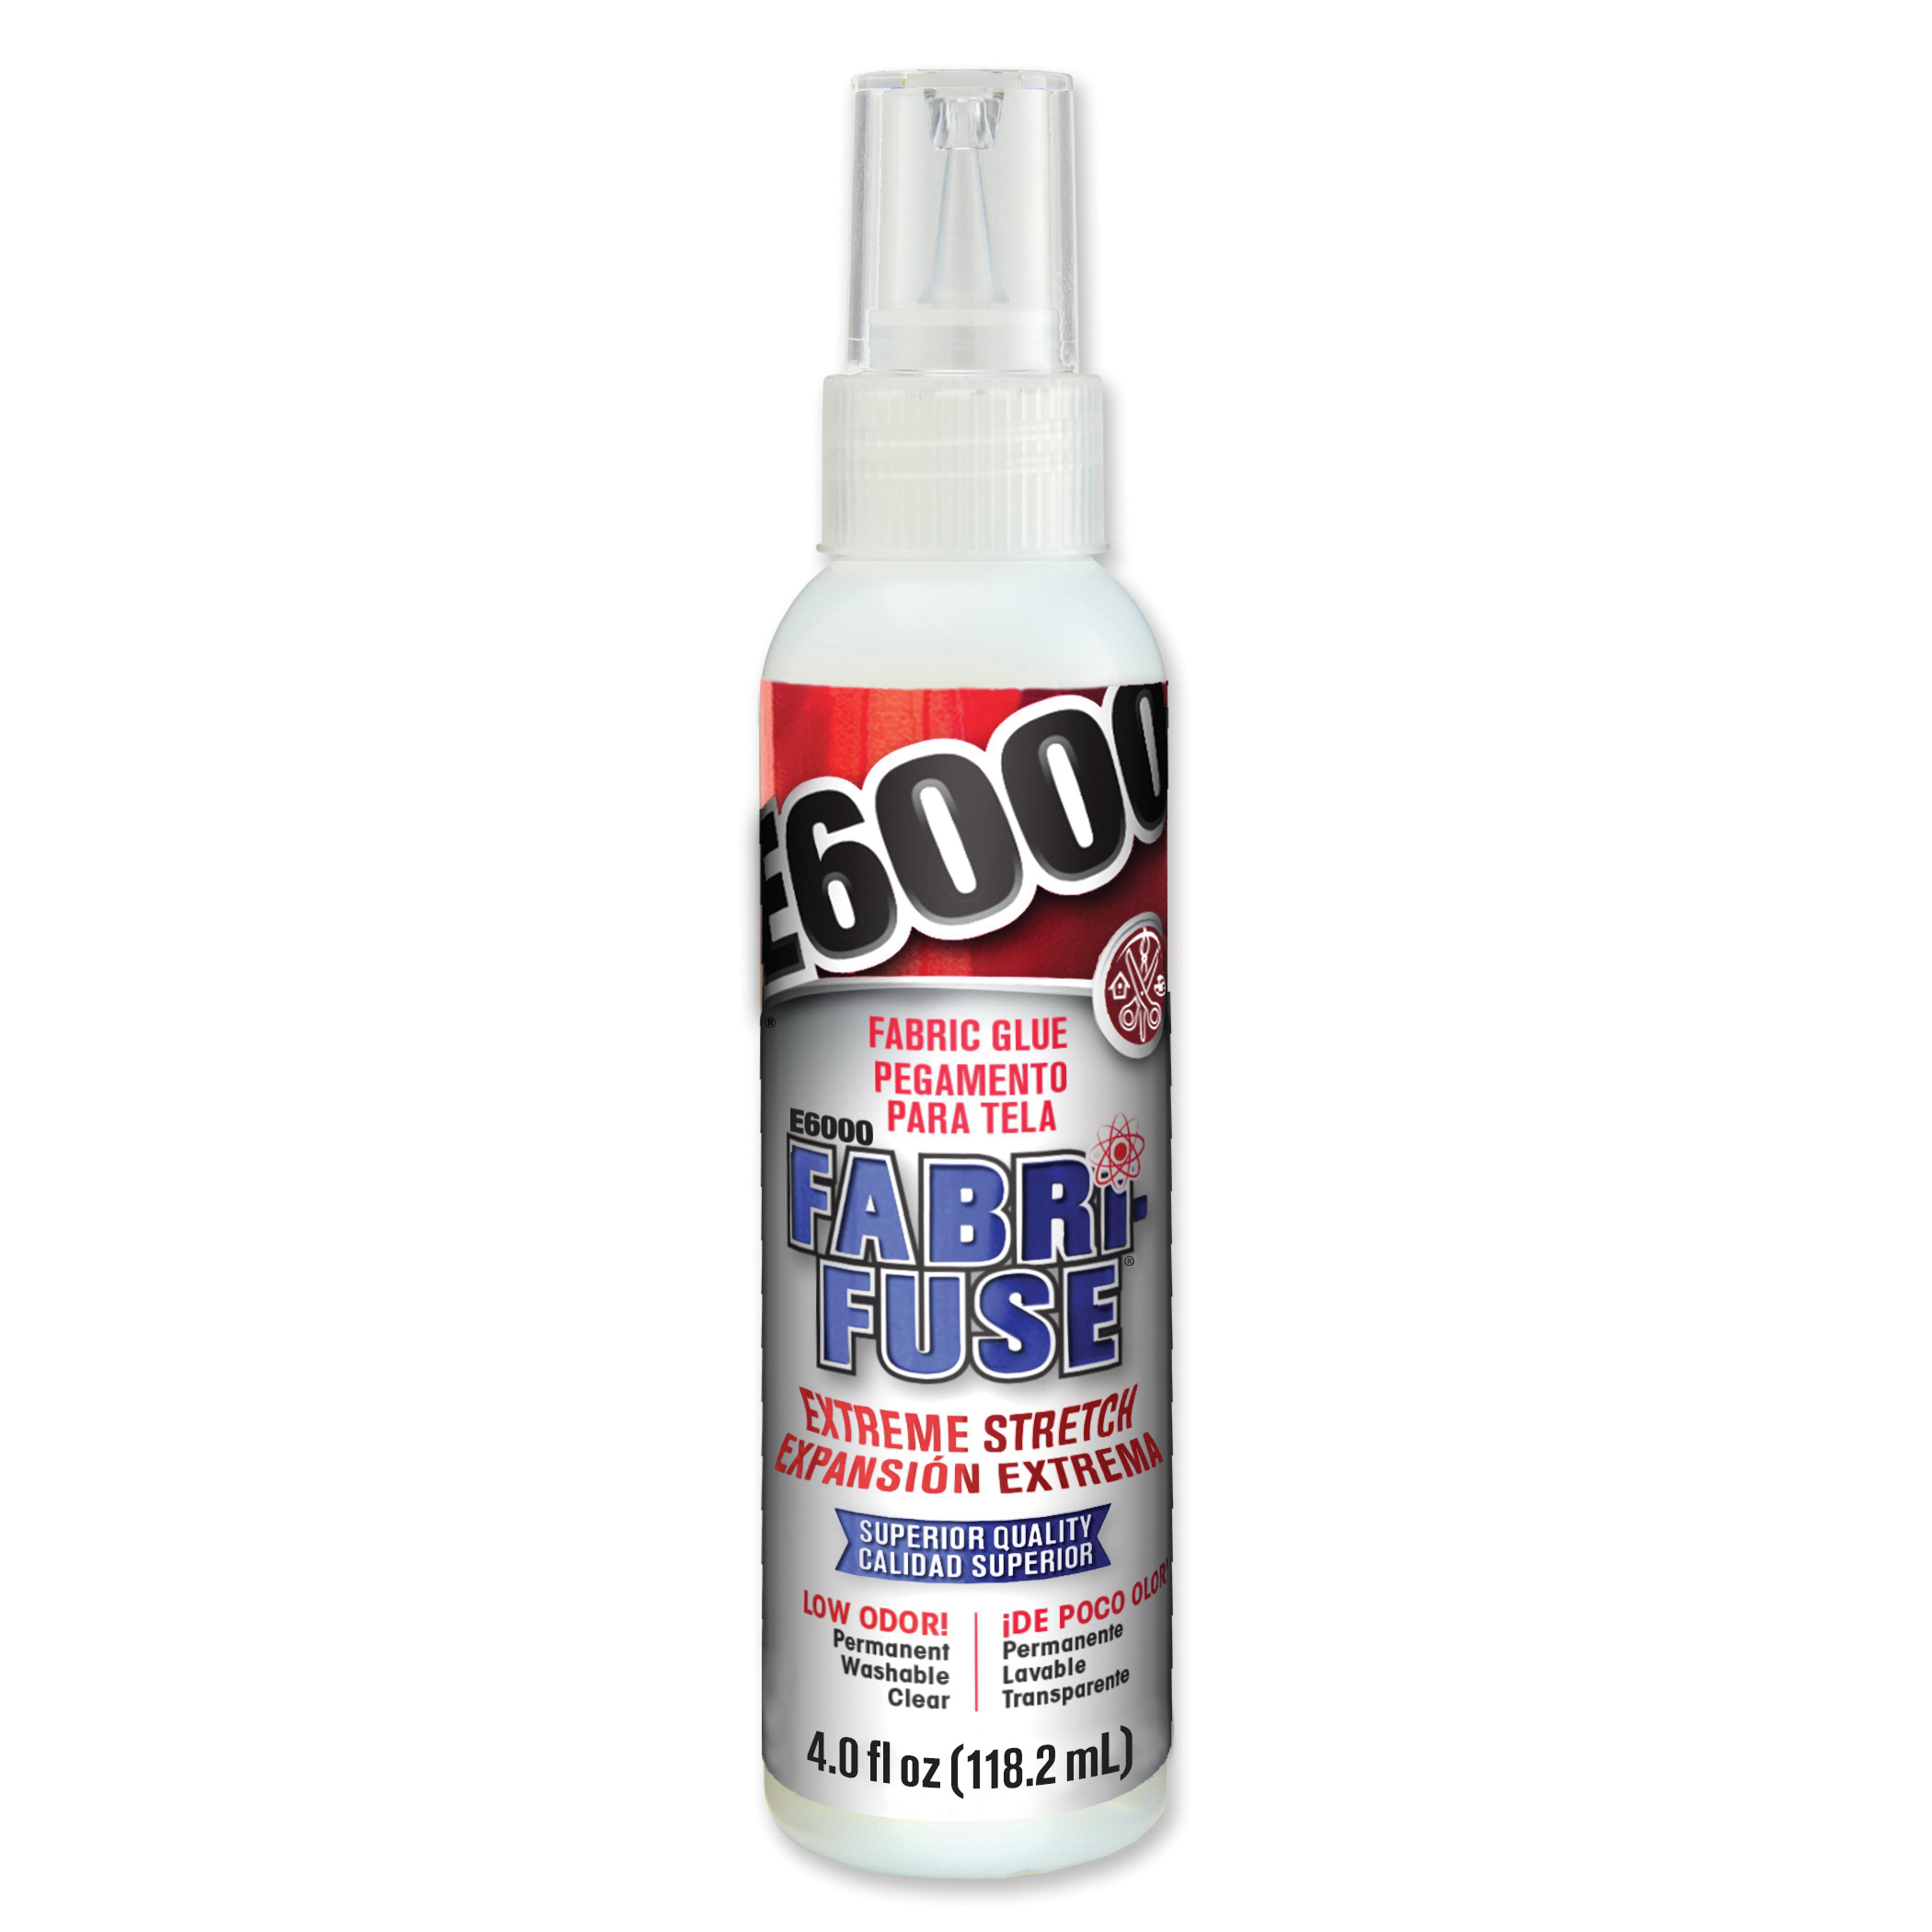 Eclectic E-6000 Spray Adhesive, 8 oz.